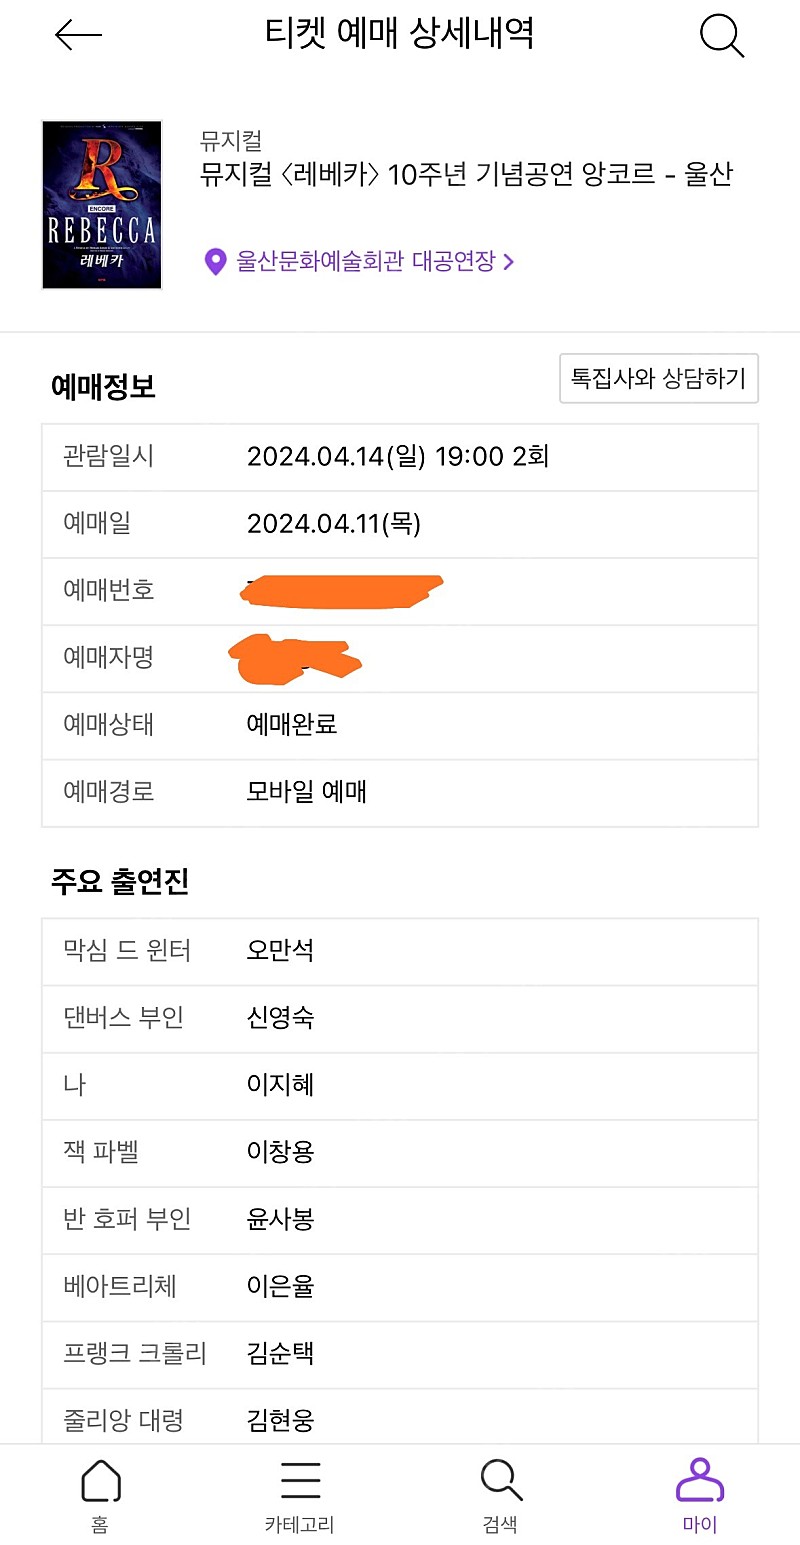 4월 14일 (일) 19:00 레베카 공연 VIP 1자리 양도 (신영숙)